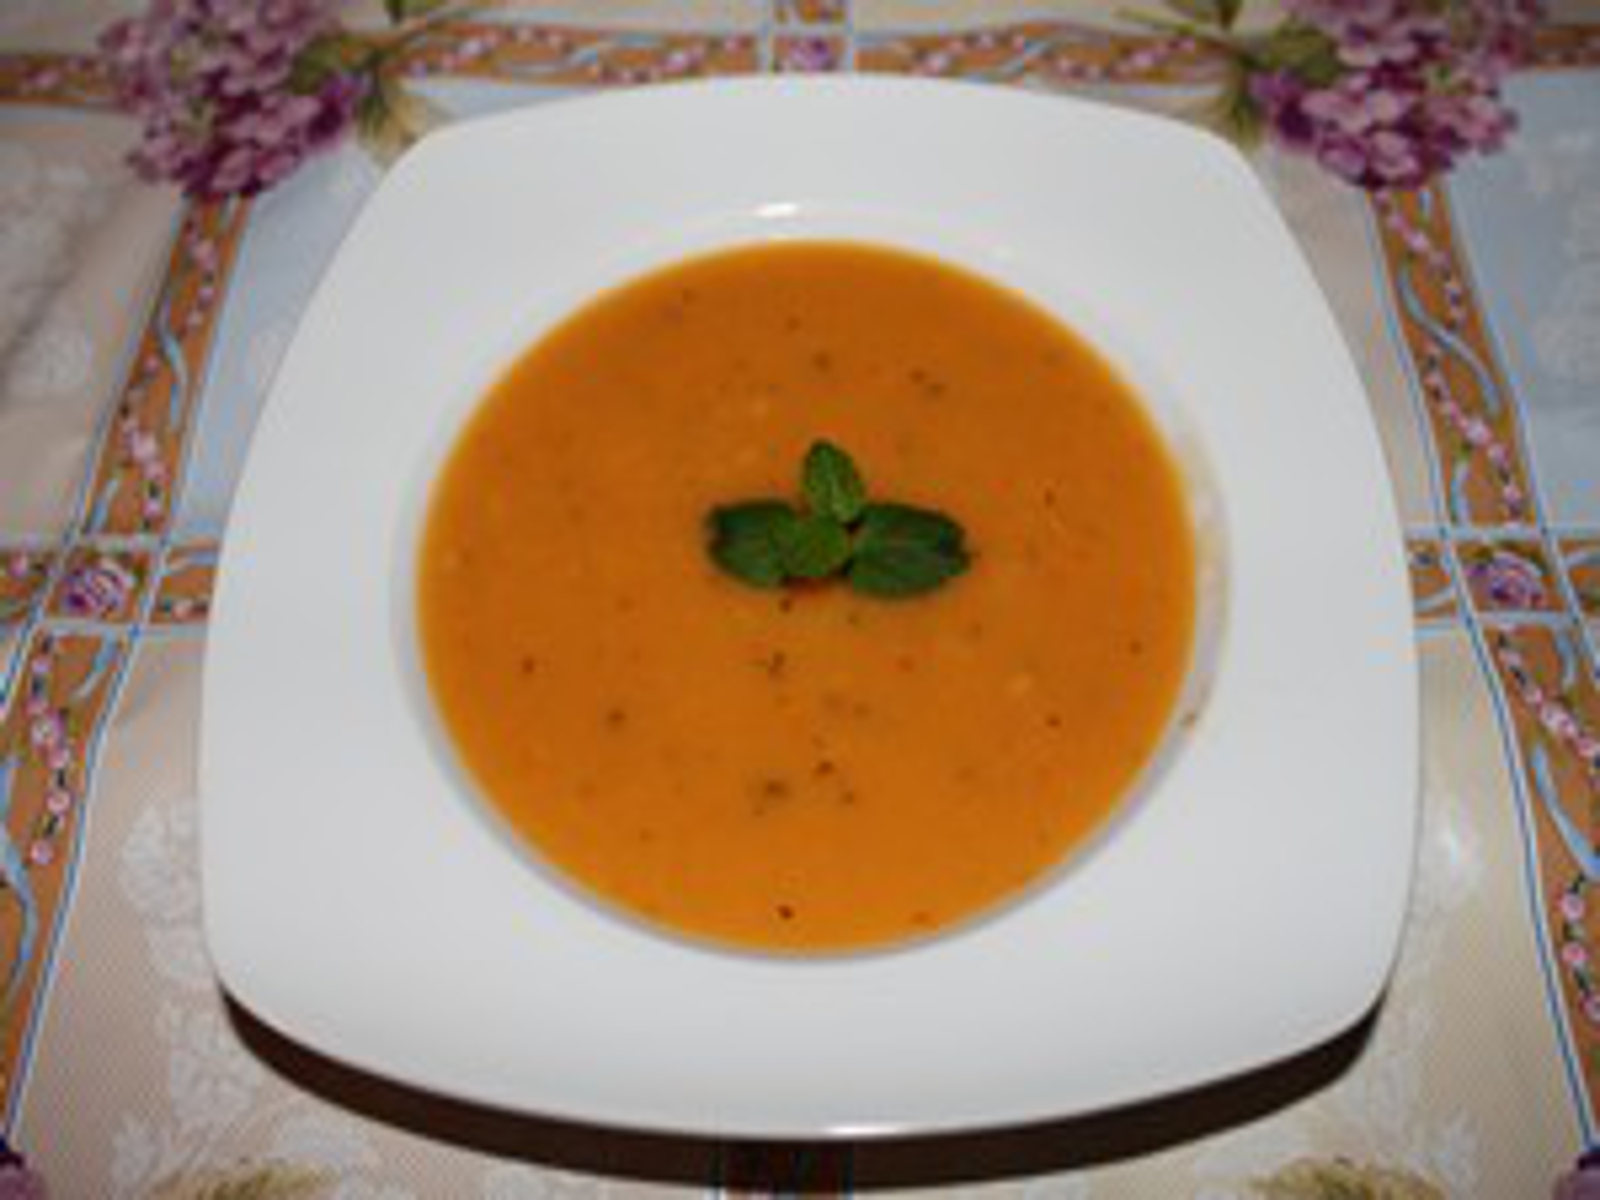 Tarhana corbasi – Soep van meel, yoghurt en groente